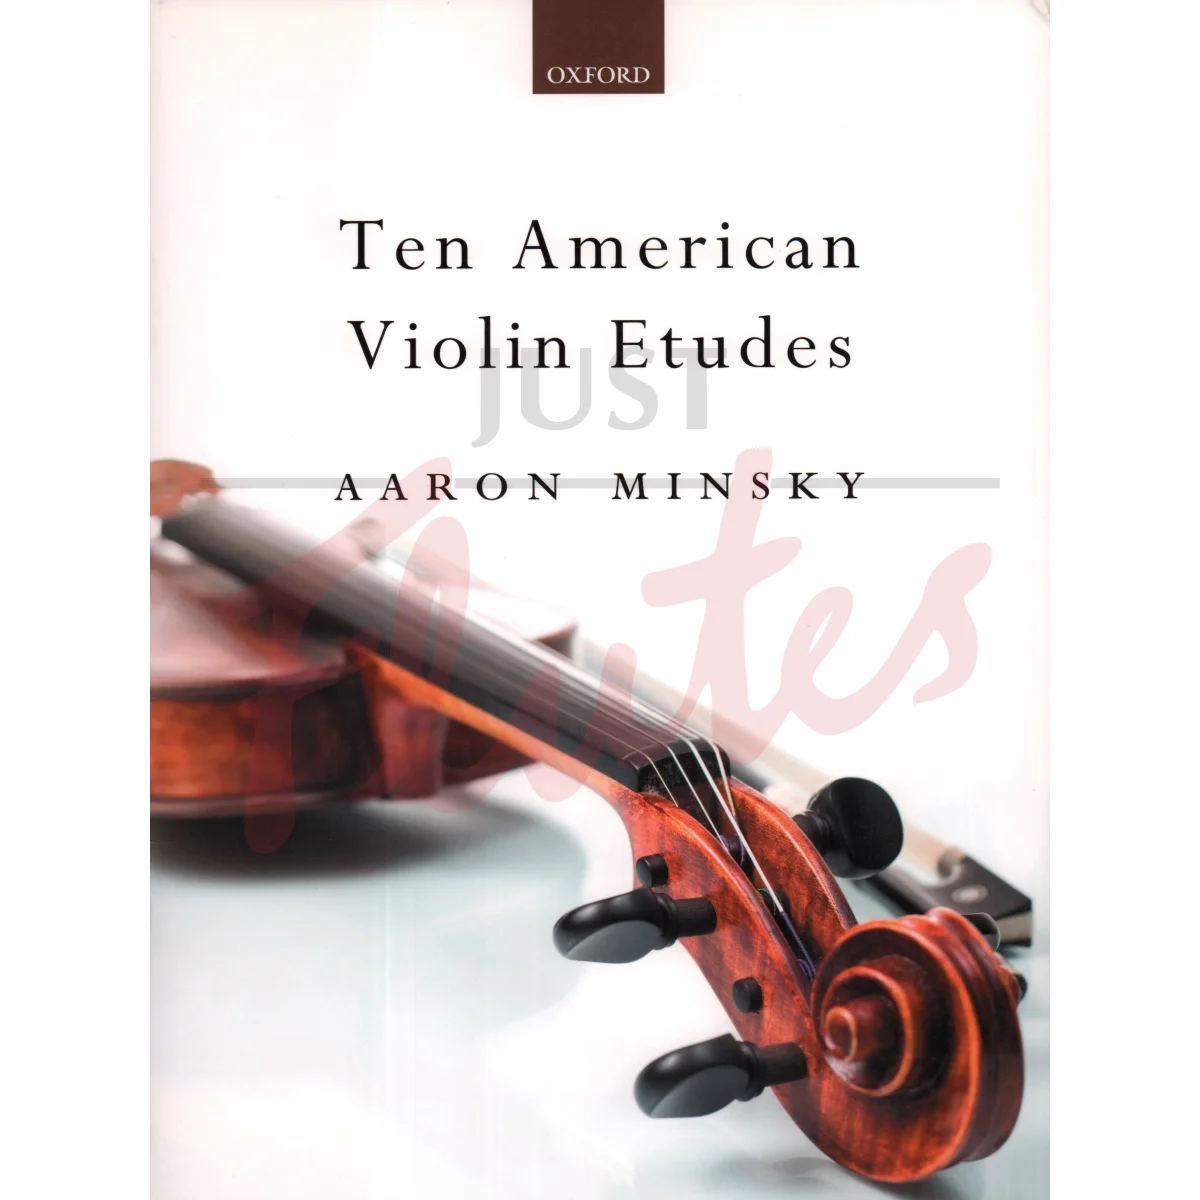 Ten American Violin Etudes